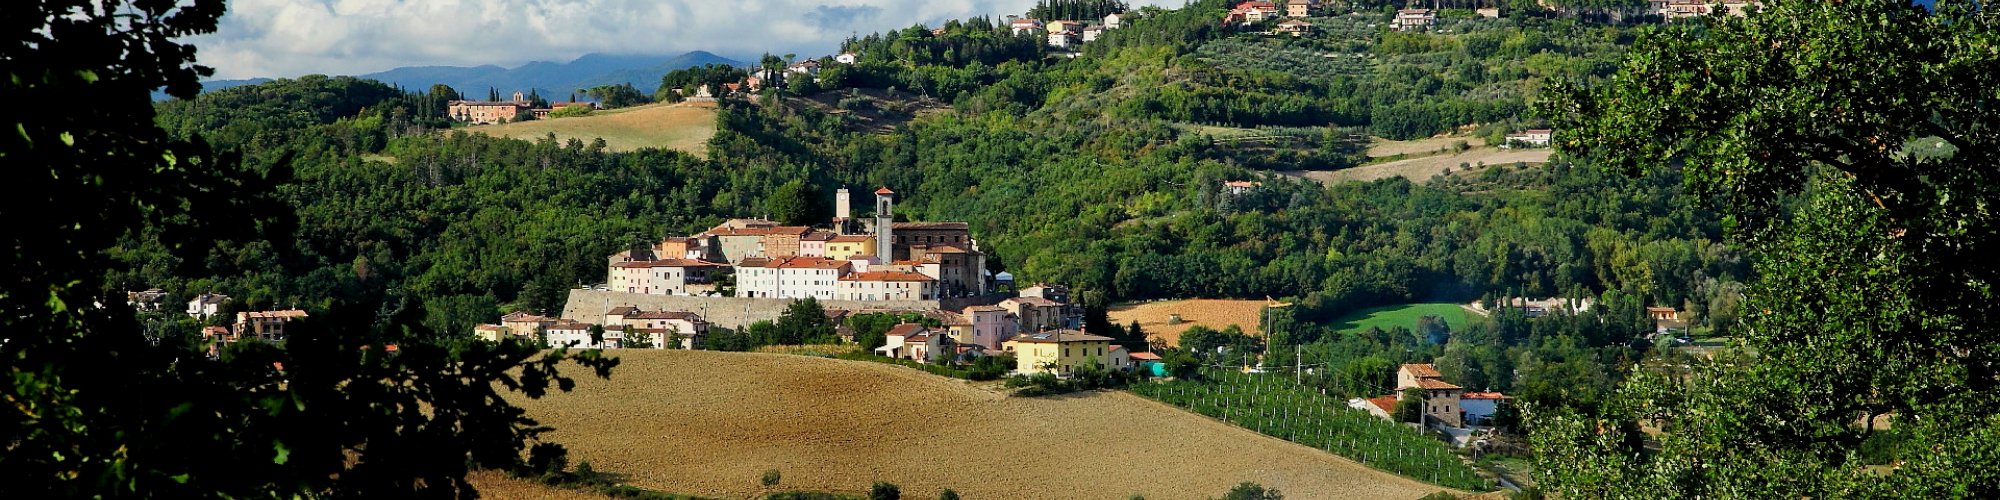 Monterchi landscape